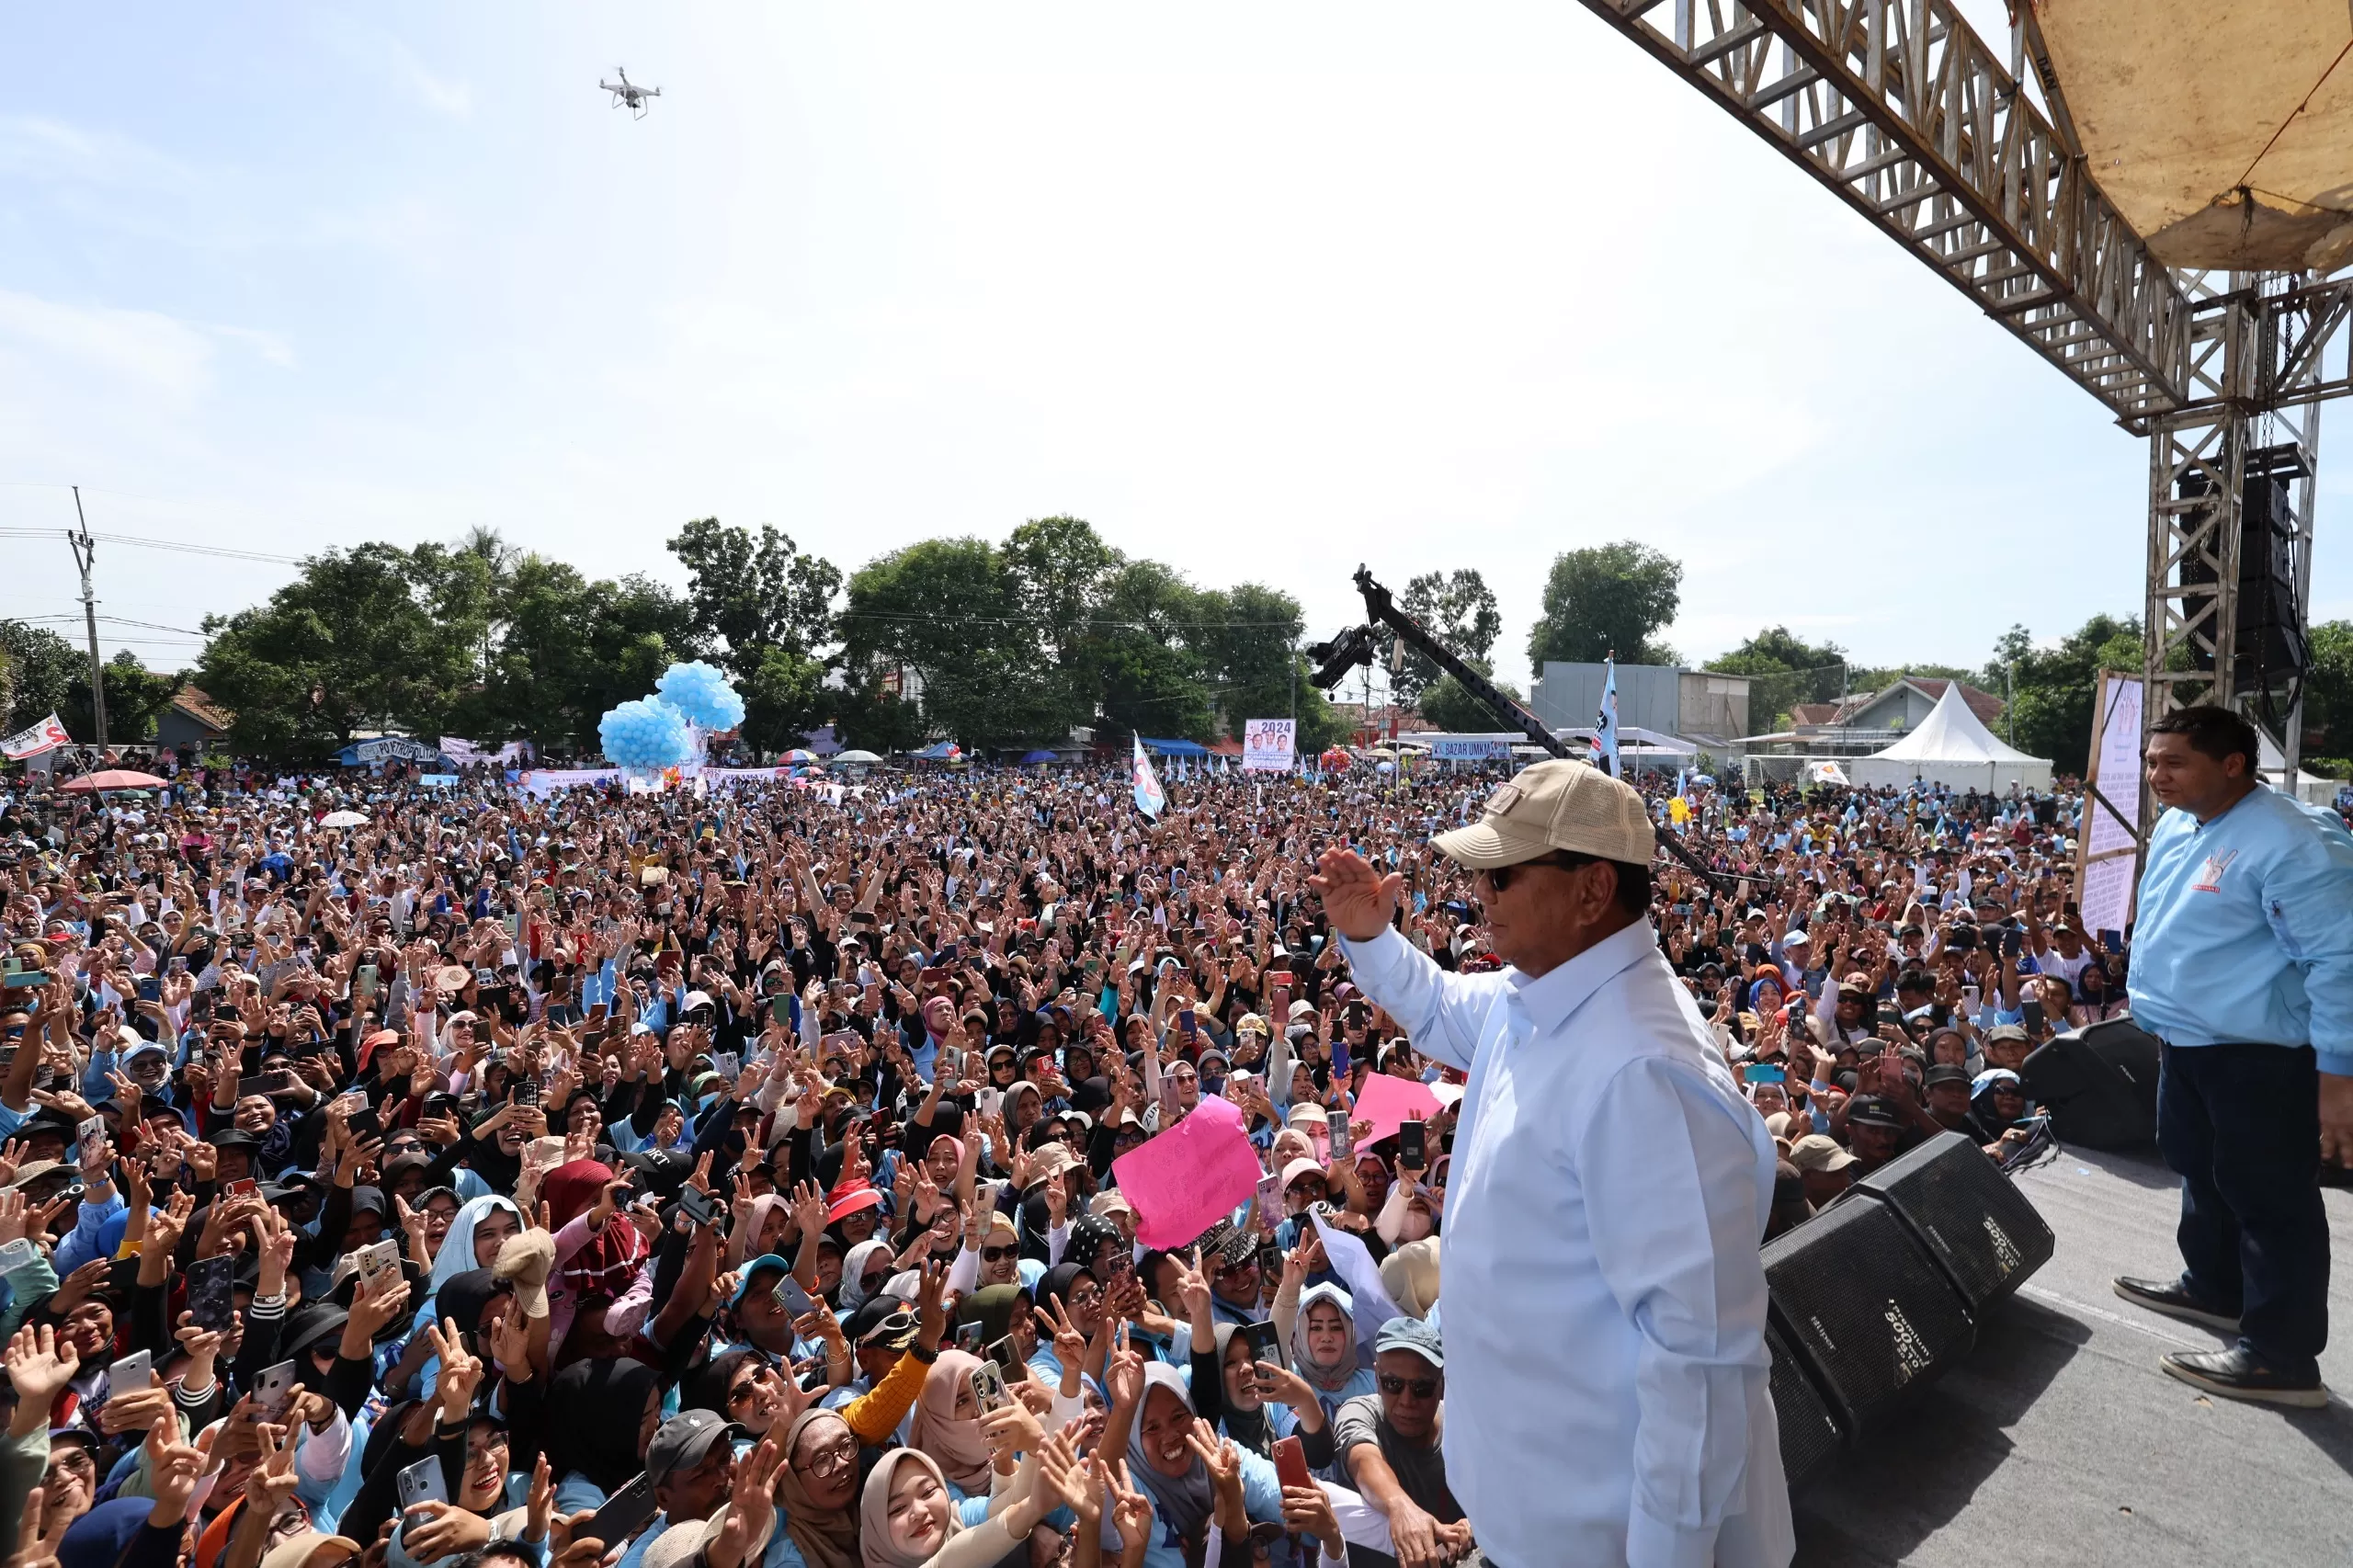 Di Hadapan Masyarakat Majalengka, Prabowo Subianto Tegaskan Komitmennya untuk Lanjutkan Program Jokowi